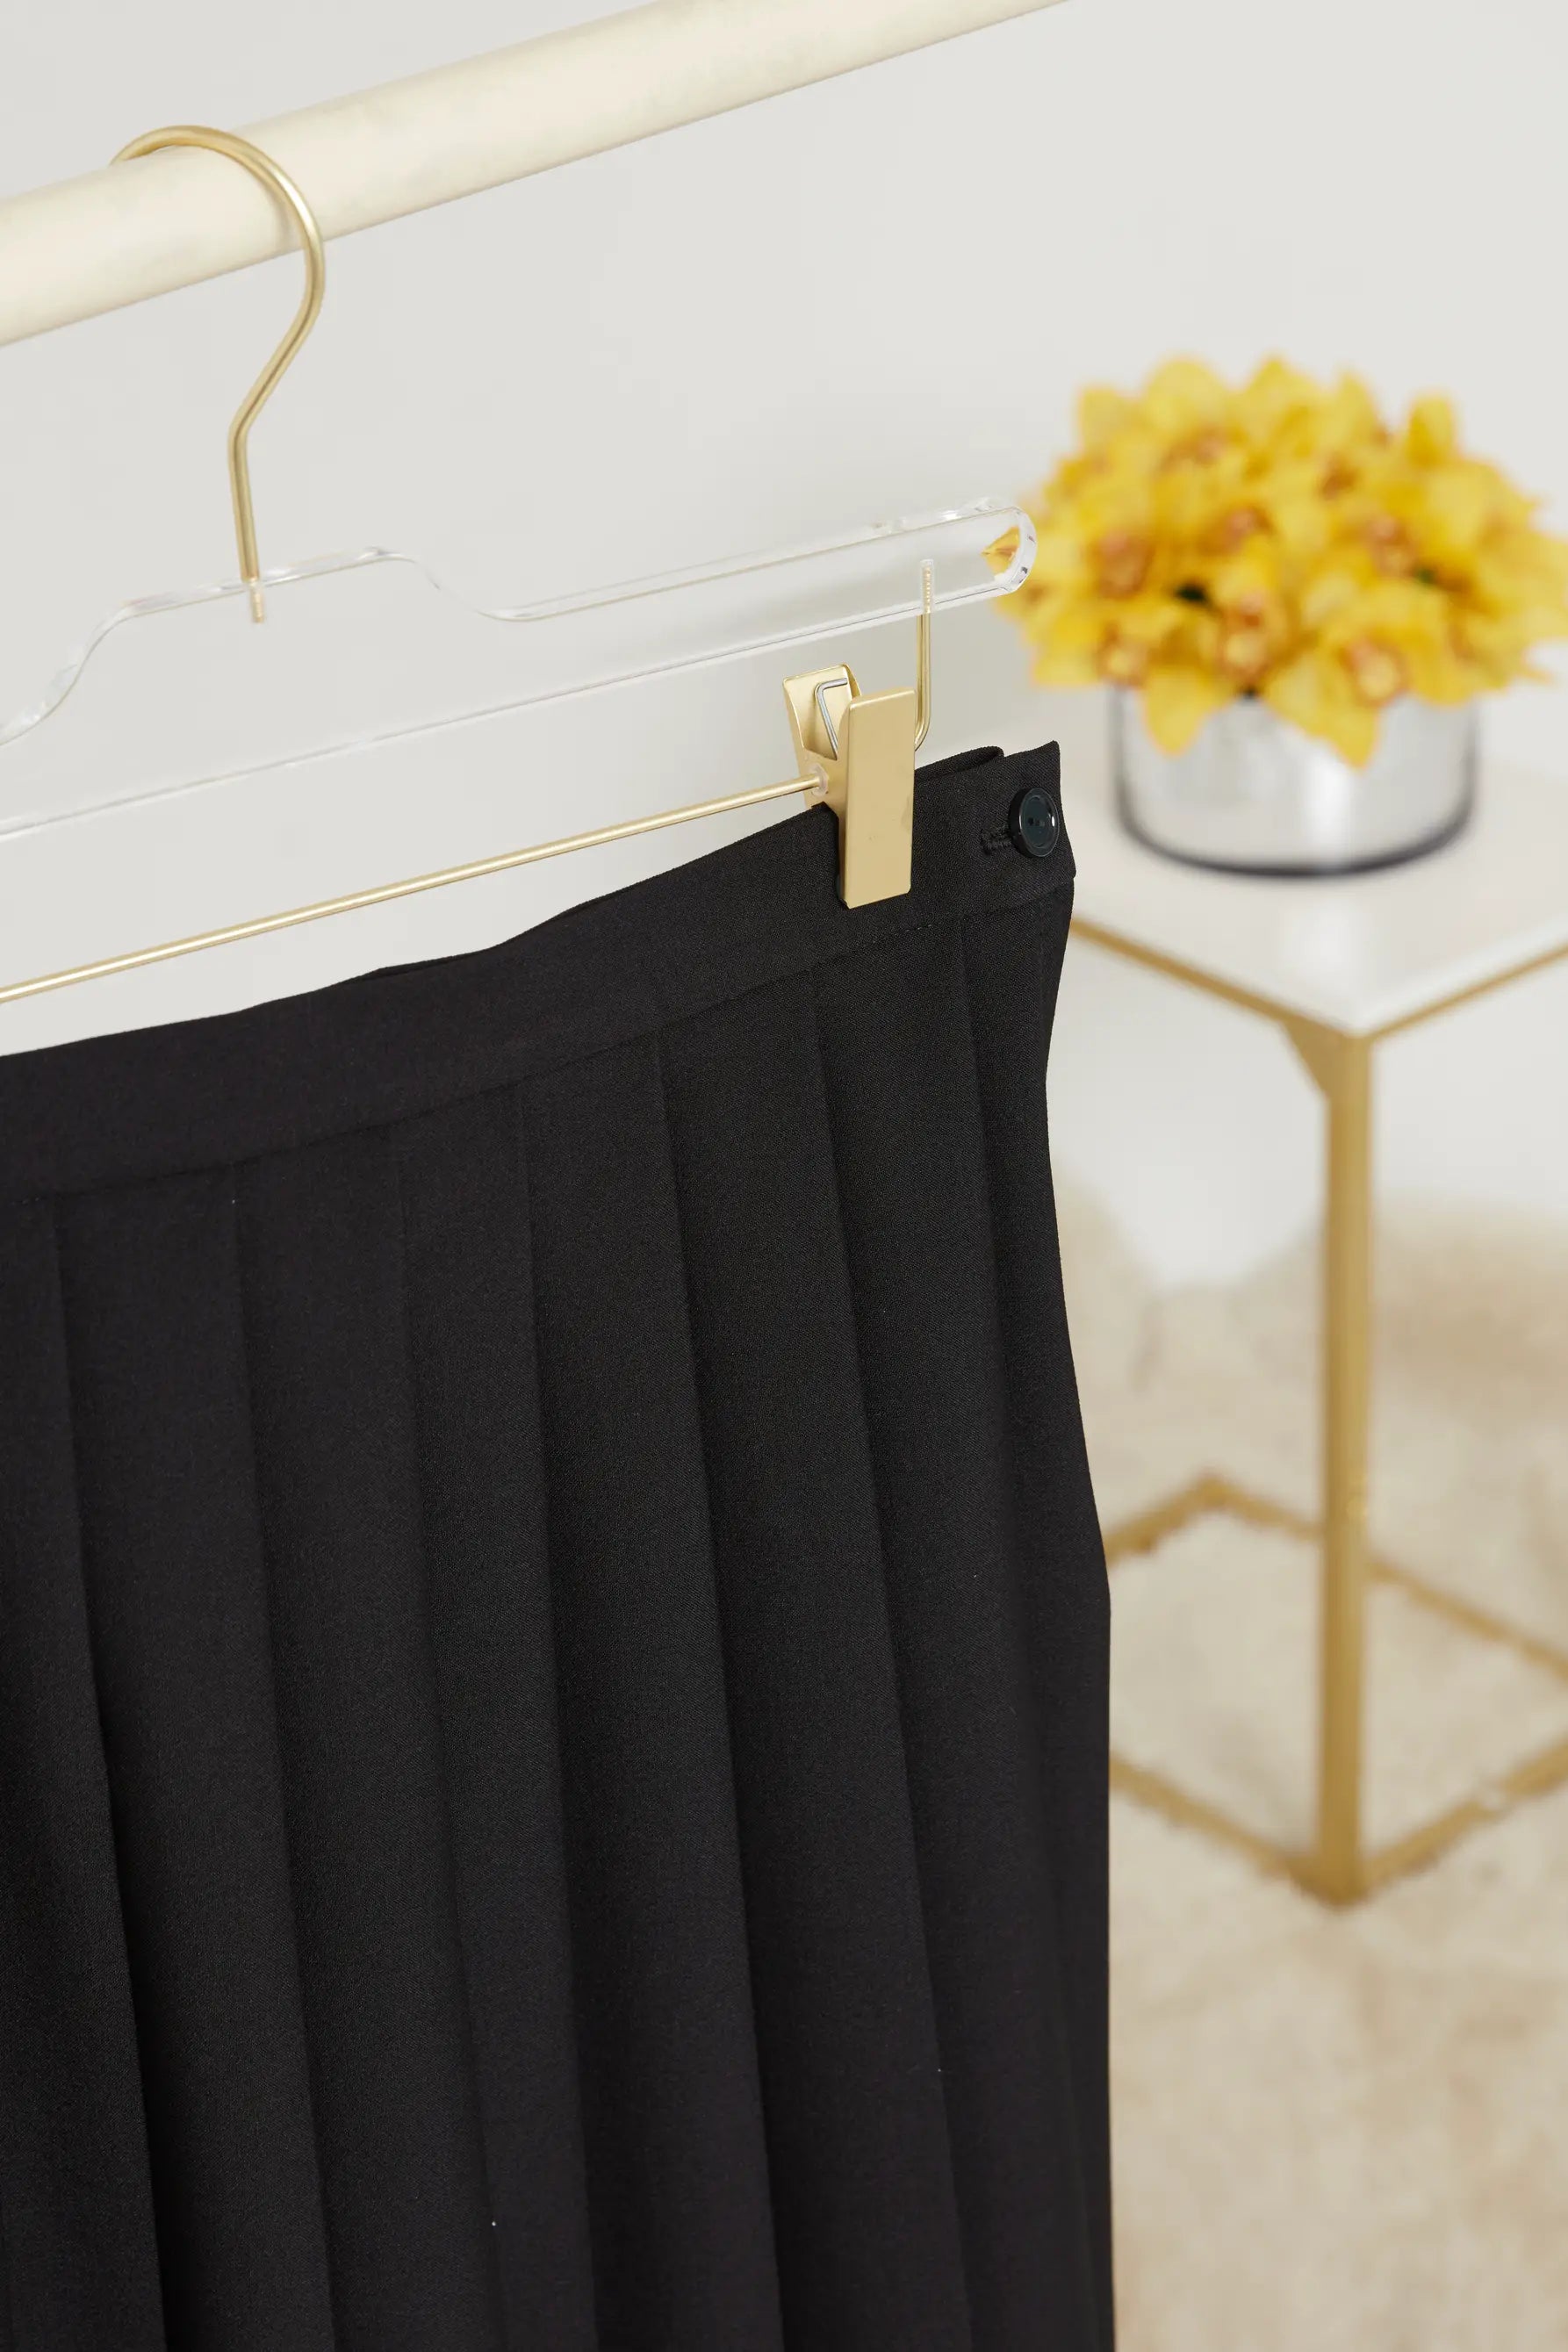 Tal Mid Length Box Pleated Skirt